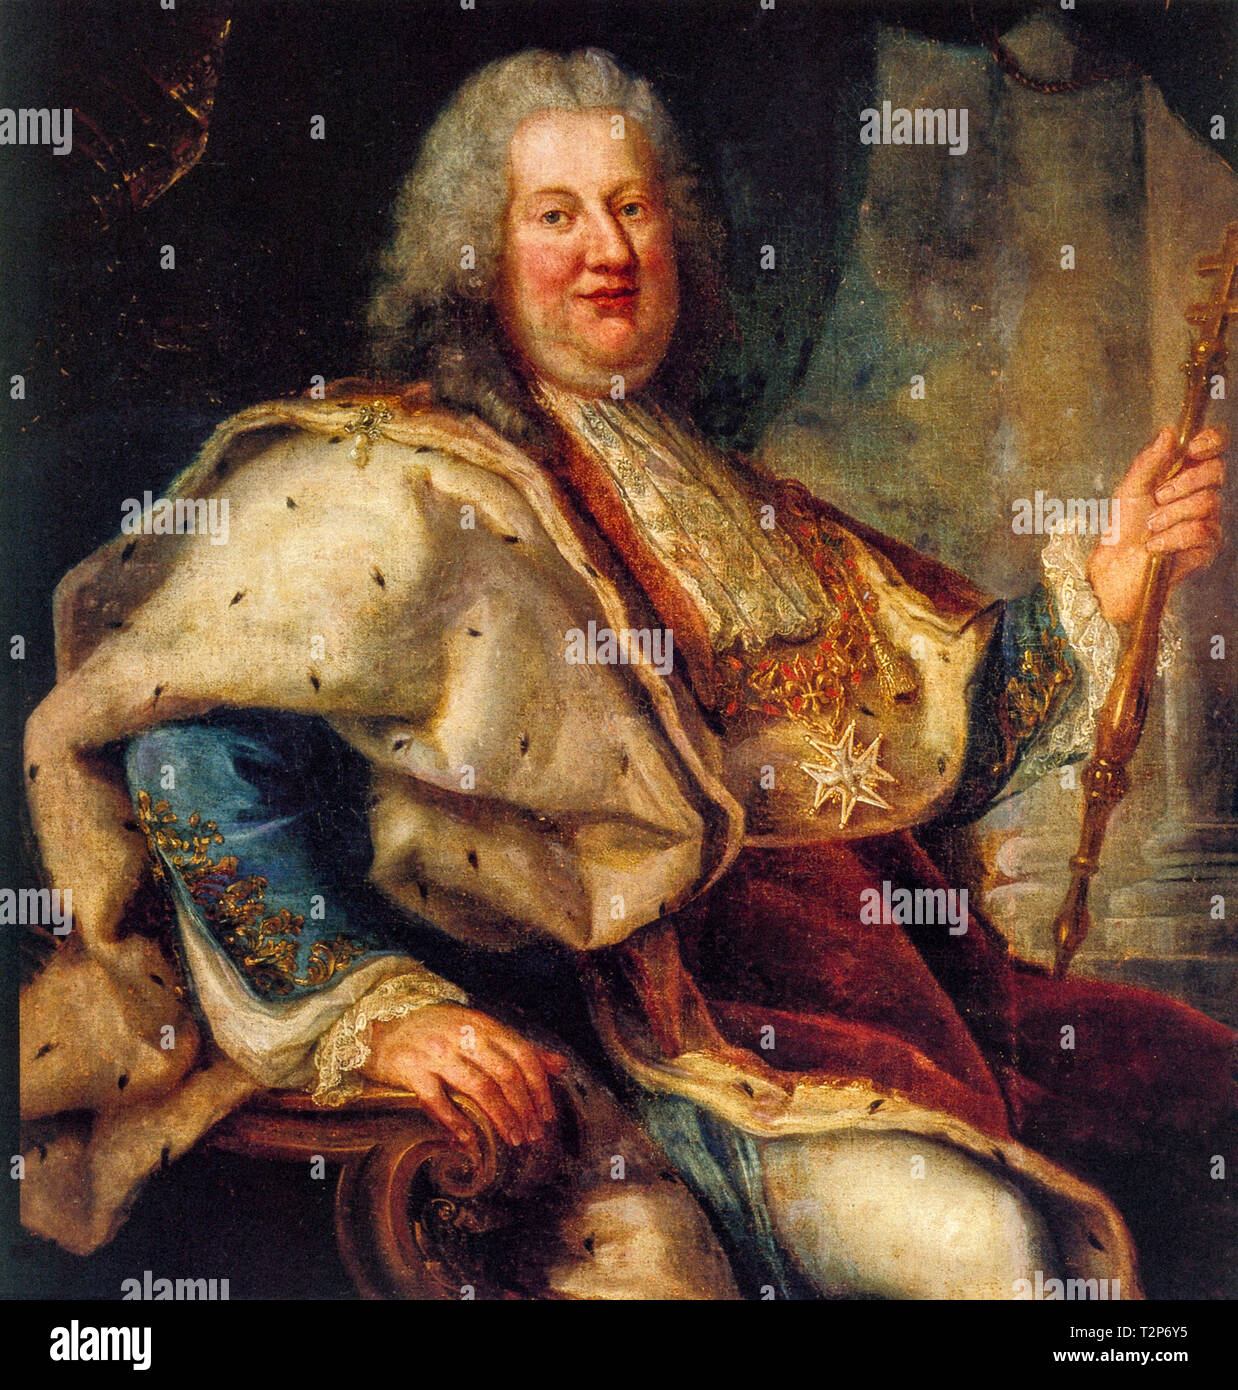 Stanislao I Leszczynski, noto anche come Stanislaw Leszczynski Boguslaw (Lviv, 20 Ottobre 1677 - Lunéville, 23 febbraio 1766), è stato un nobiluomo Polacco, divenne re di Polonia e granduca di Lituania, primo (1704 - 1709) durante la Grande Guerra del Nord, poi nuovamente (1733 - 1736) Foto Stock